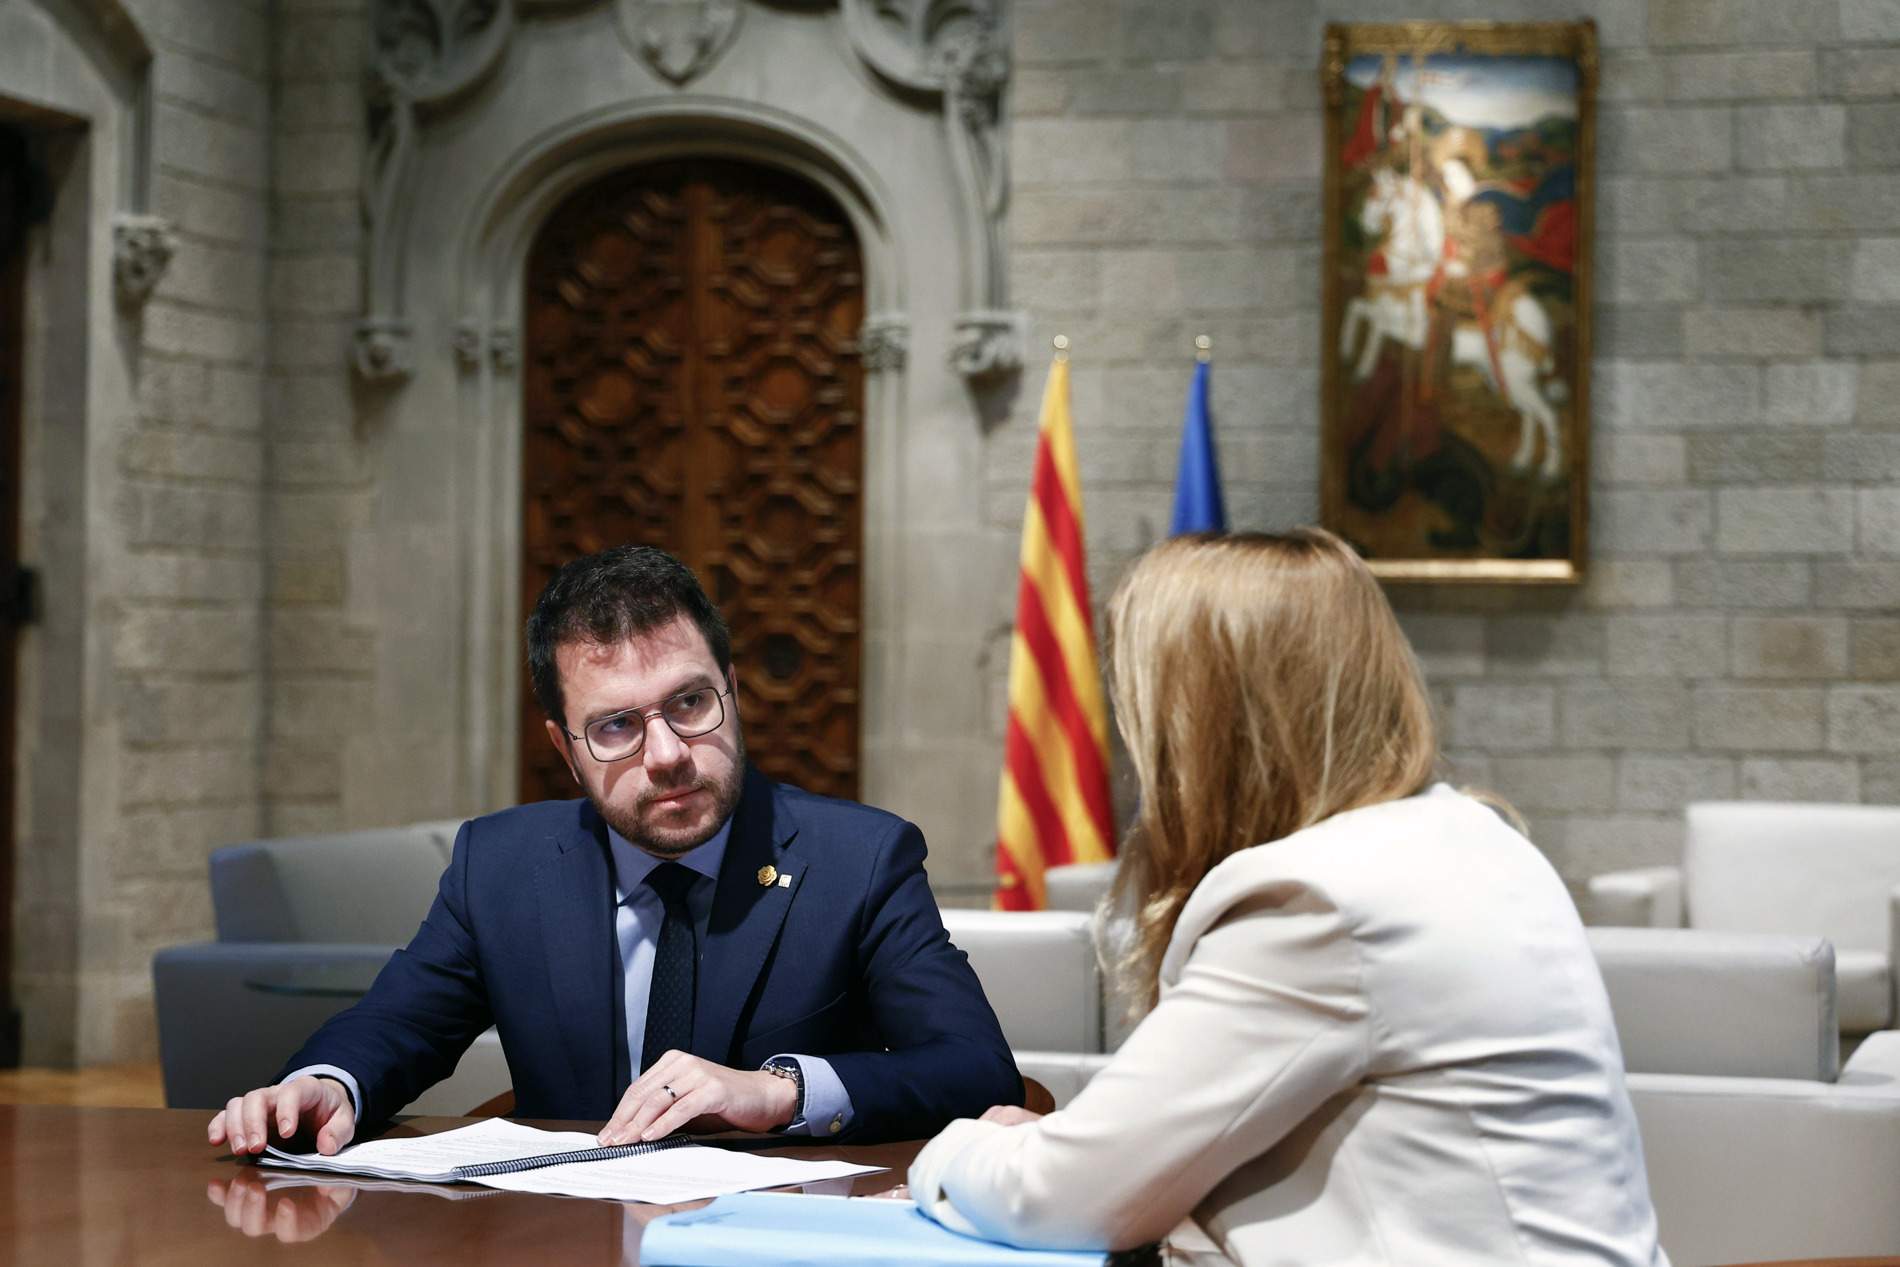 El nou finançament català necessita majoria absoluta al Congrés per canviar la Lofca